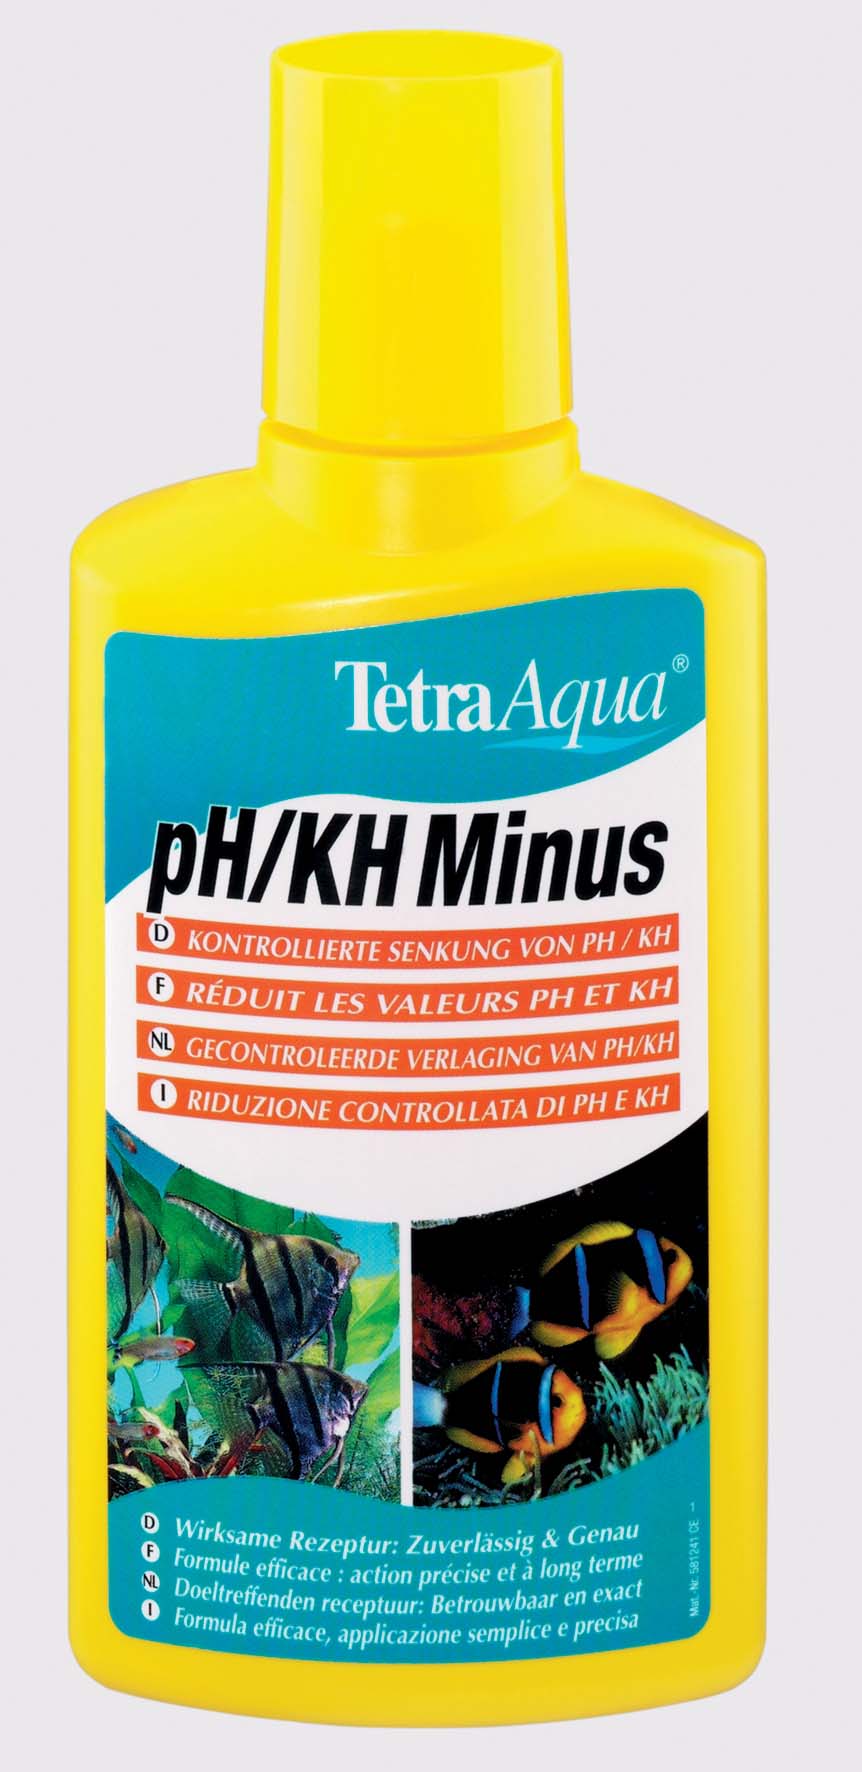 TETRA Aqua pH/KH Minus Soluţie pt. reducerea durităţii şi acidităţii a – 